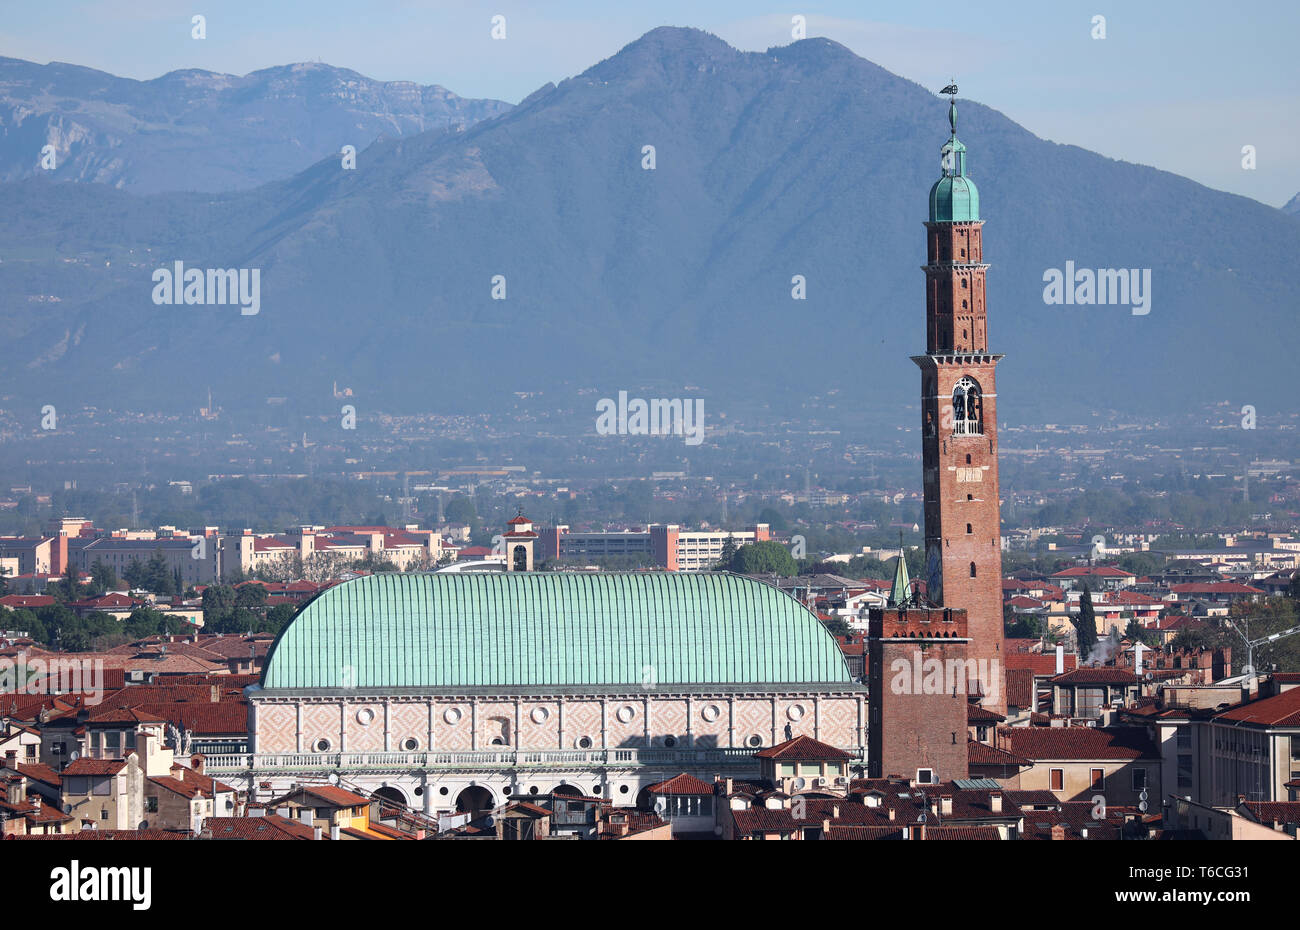 Antico palazzo progettato dall architetto Palladio chiamato Basilica Palladiana a Vicenza Città in Italia. Sullo sfondo vi è il monte Summano Foto Stock